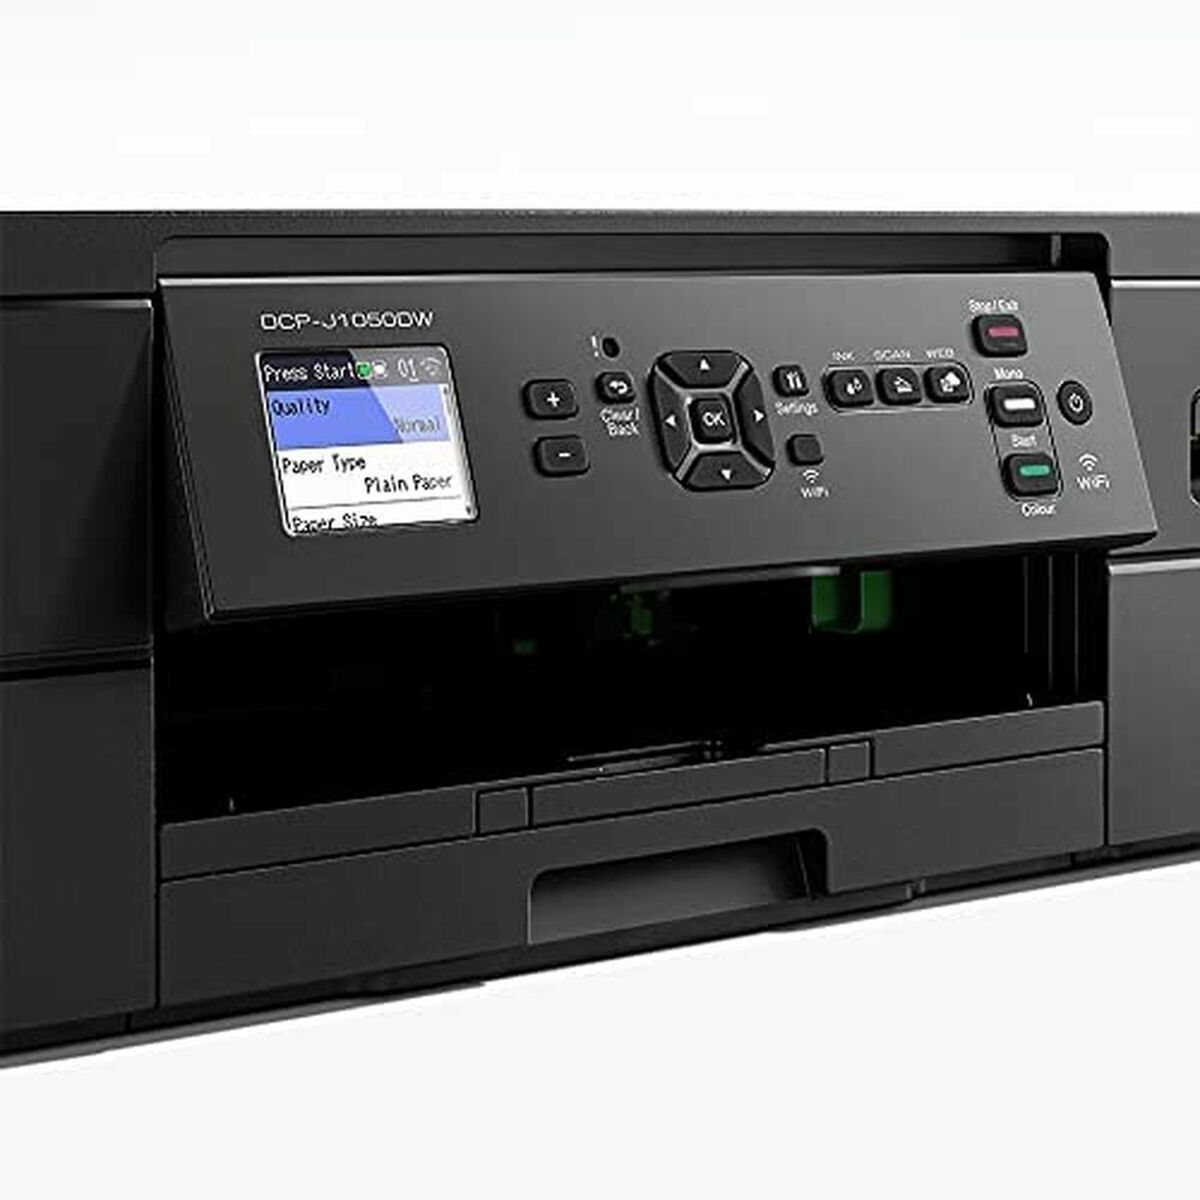 Imprimantă Multifuncțională Brother DCP-J1050DW